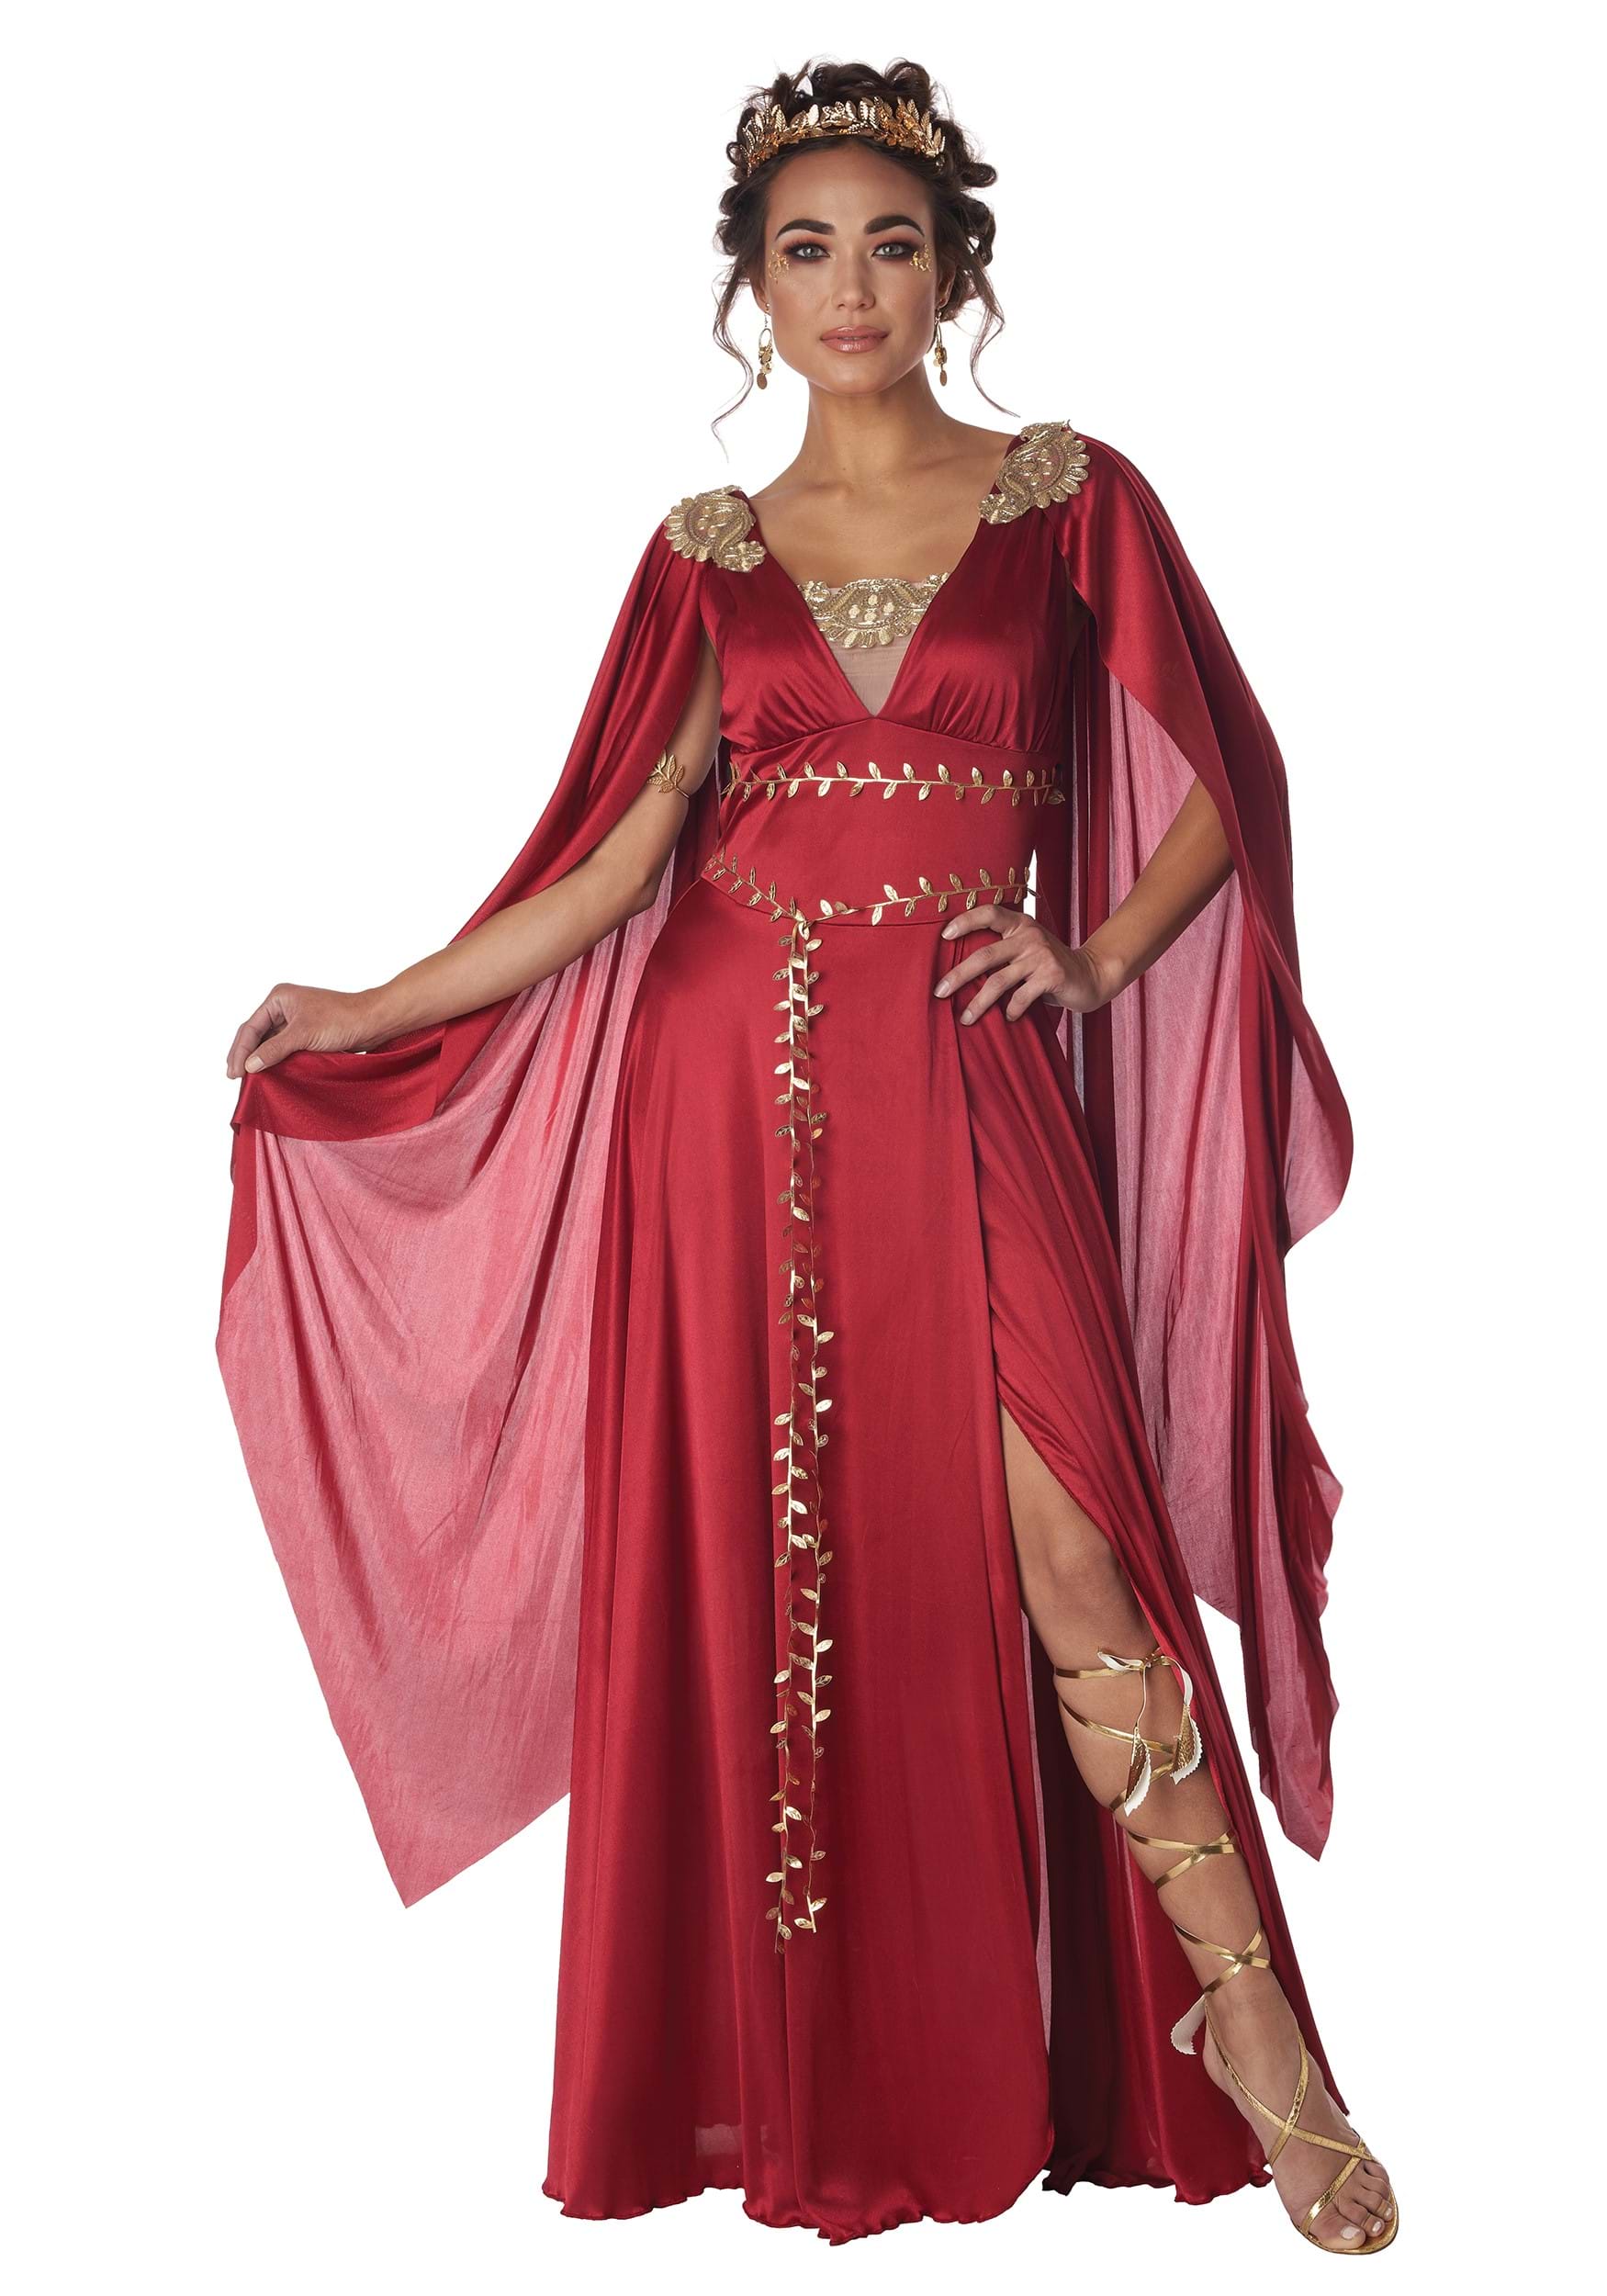 Greek Goddess Costume For Women - alt1